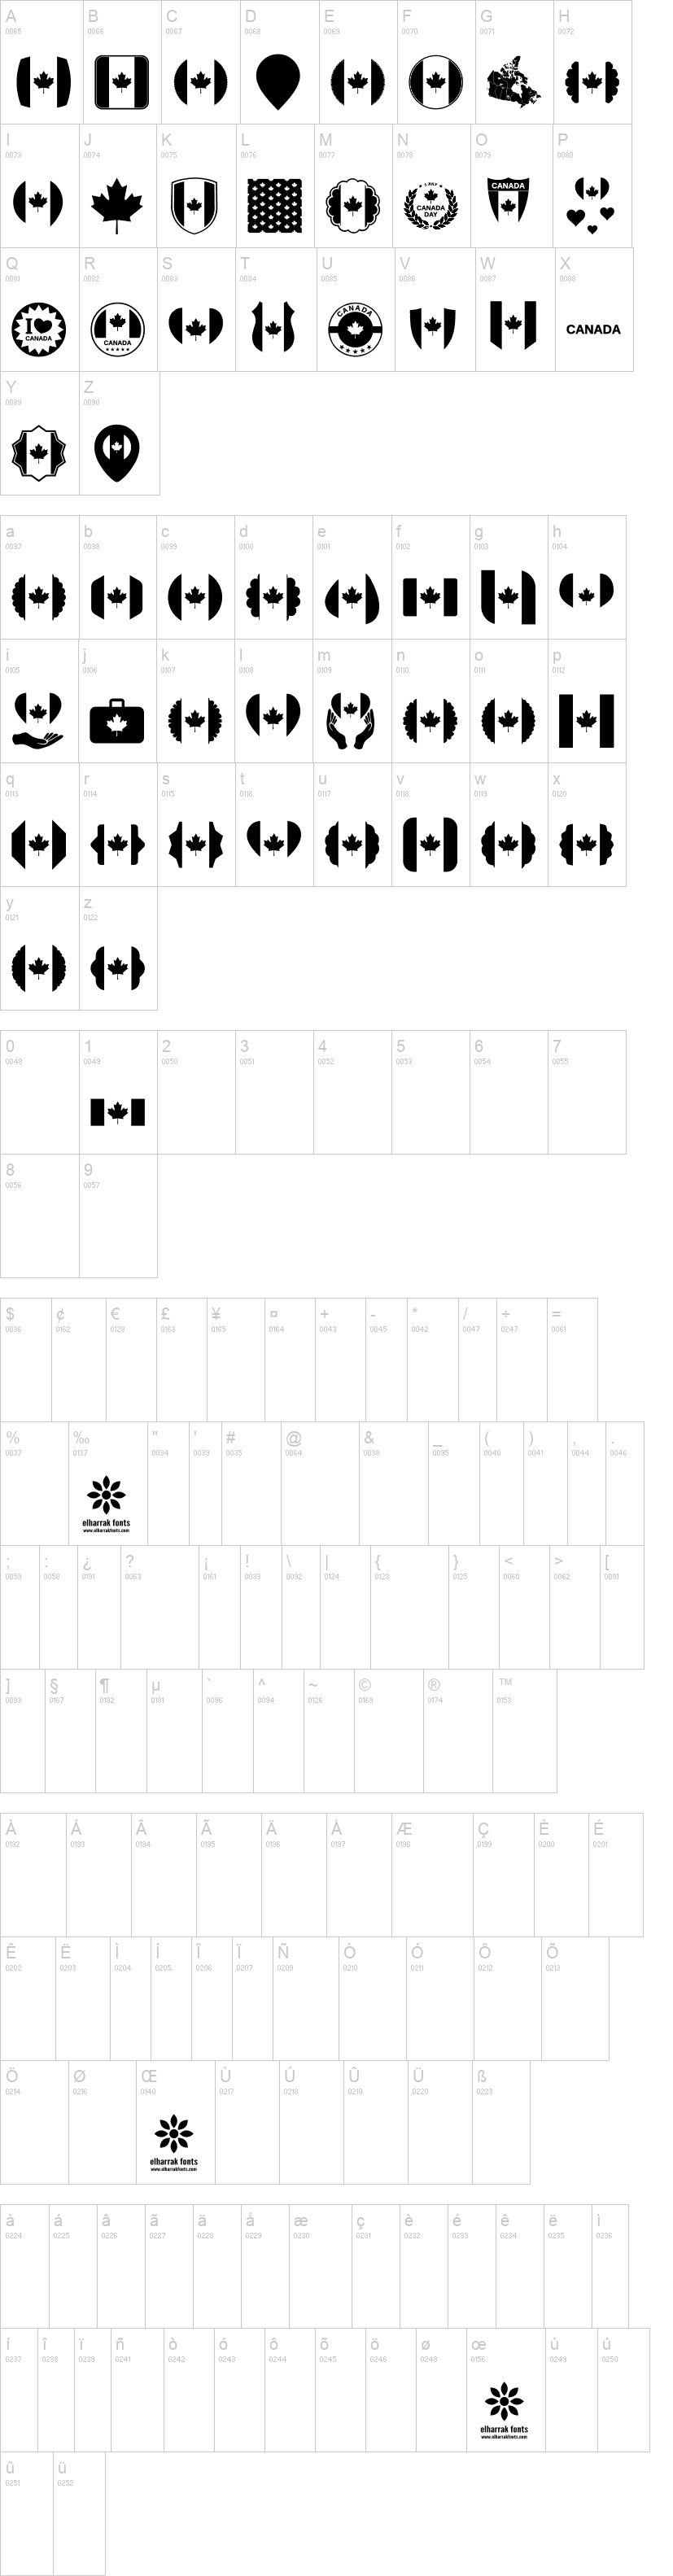 Font Canada Color字符映射图